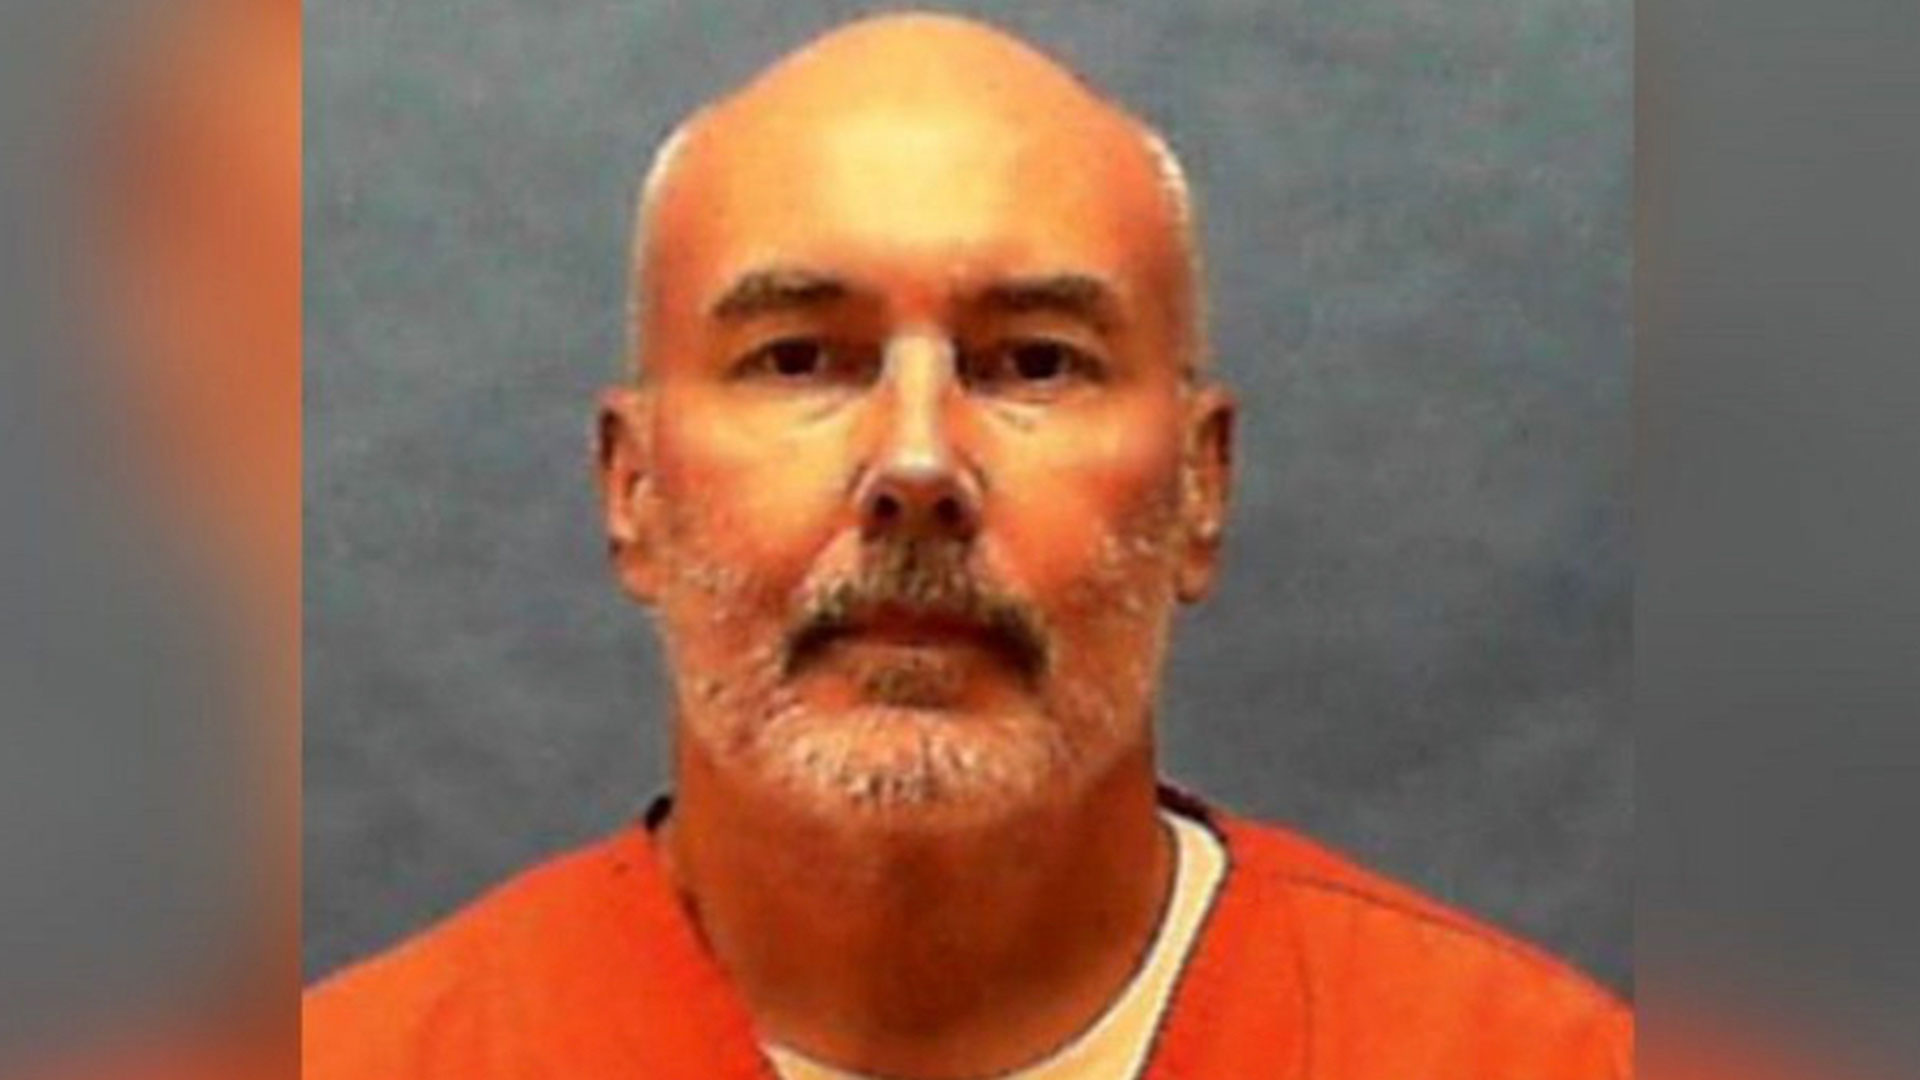 Donald David Dillbeck, condenado a pena de muerte. Su ejecución está planeada para mañana